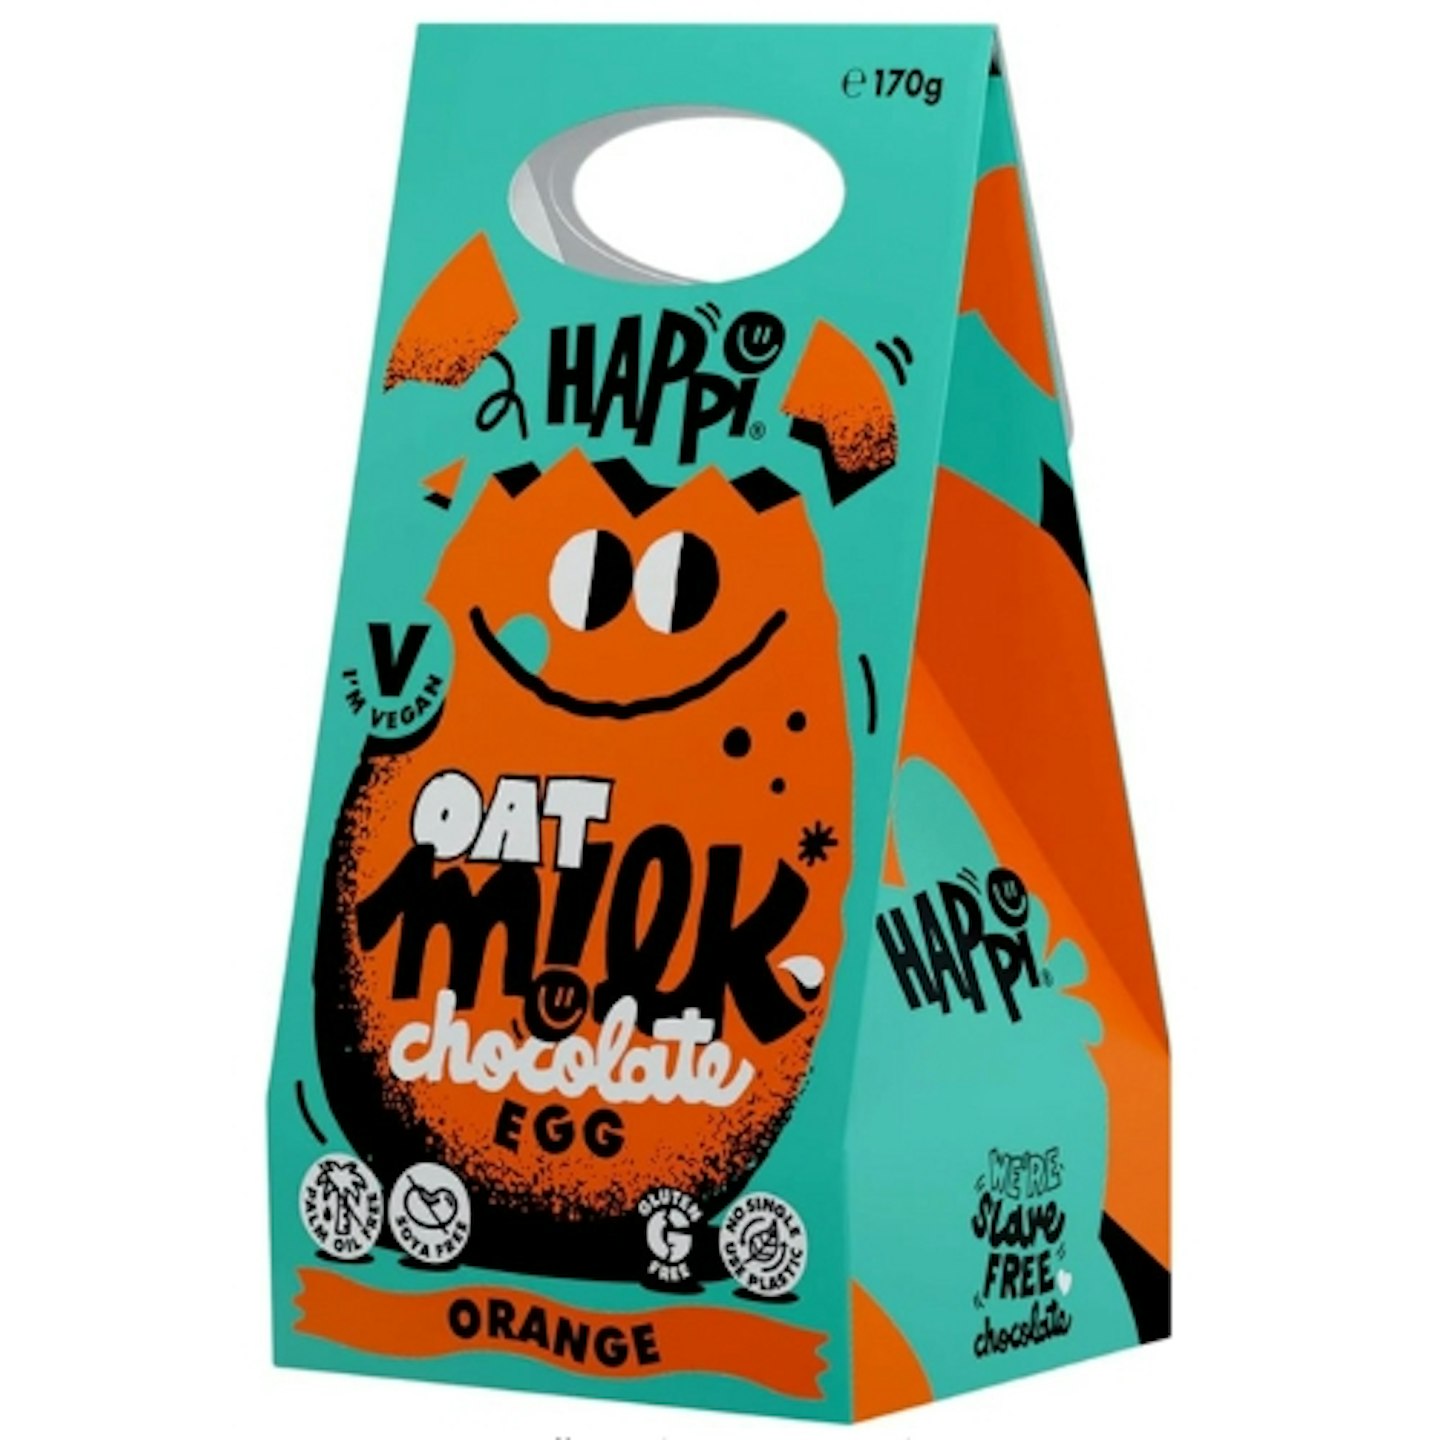 Happi Orange 170g Oat Milk Vegan Easter Egg